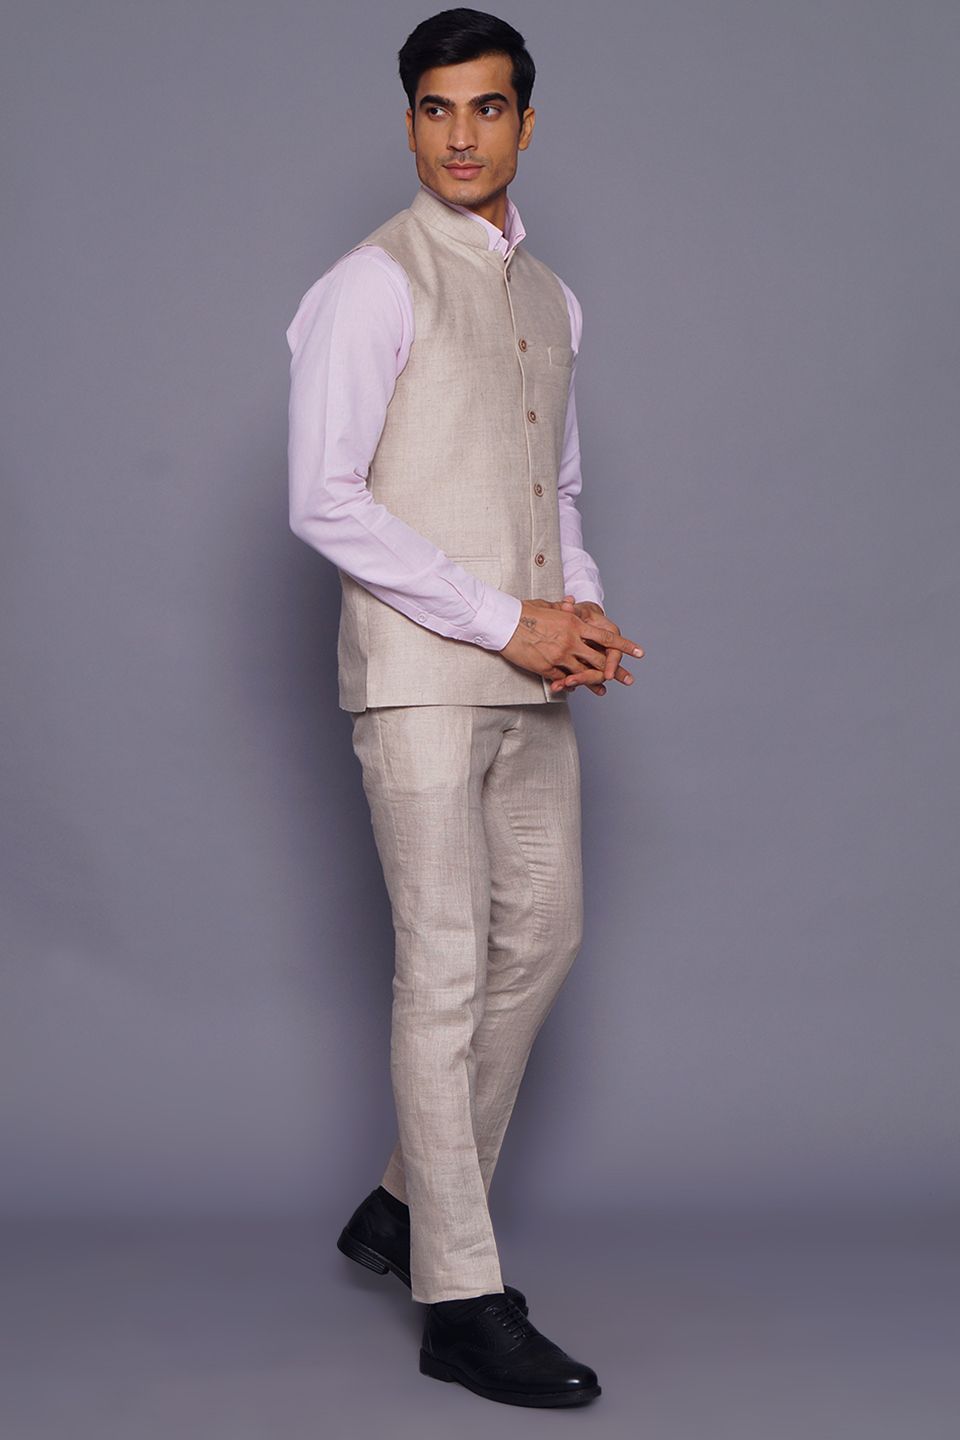 Wintage Men's Pure Linen  Vest & Pant Set: Cream